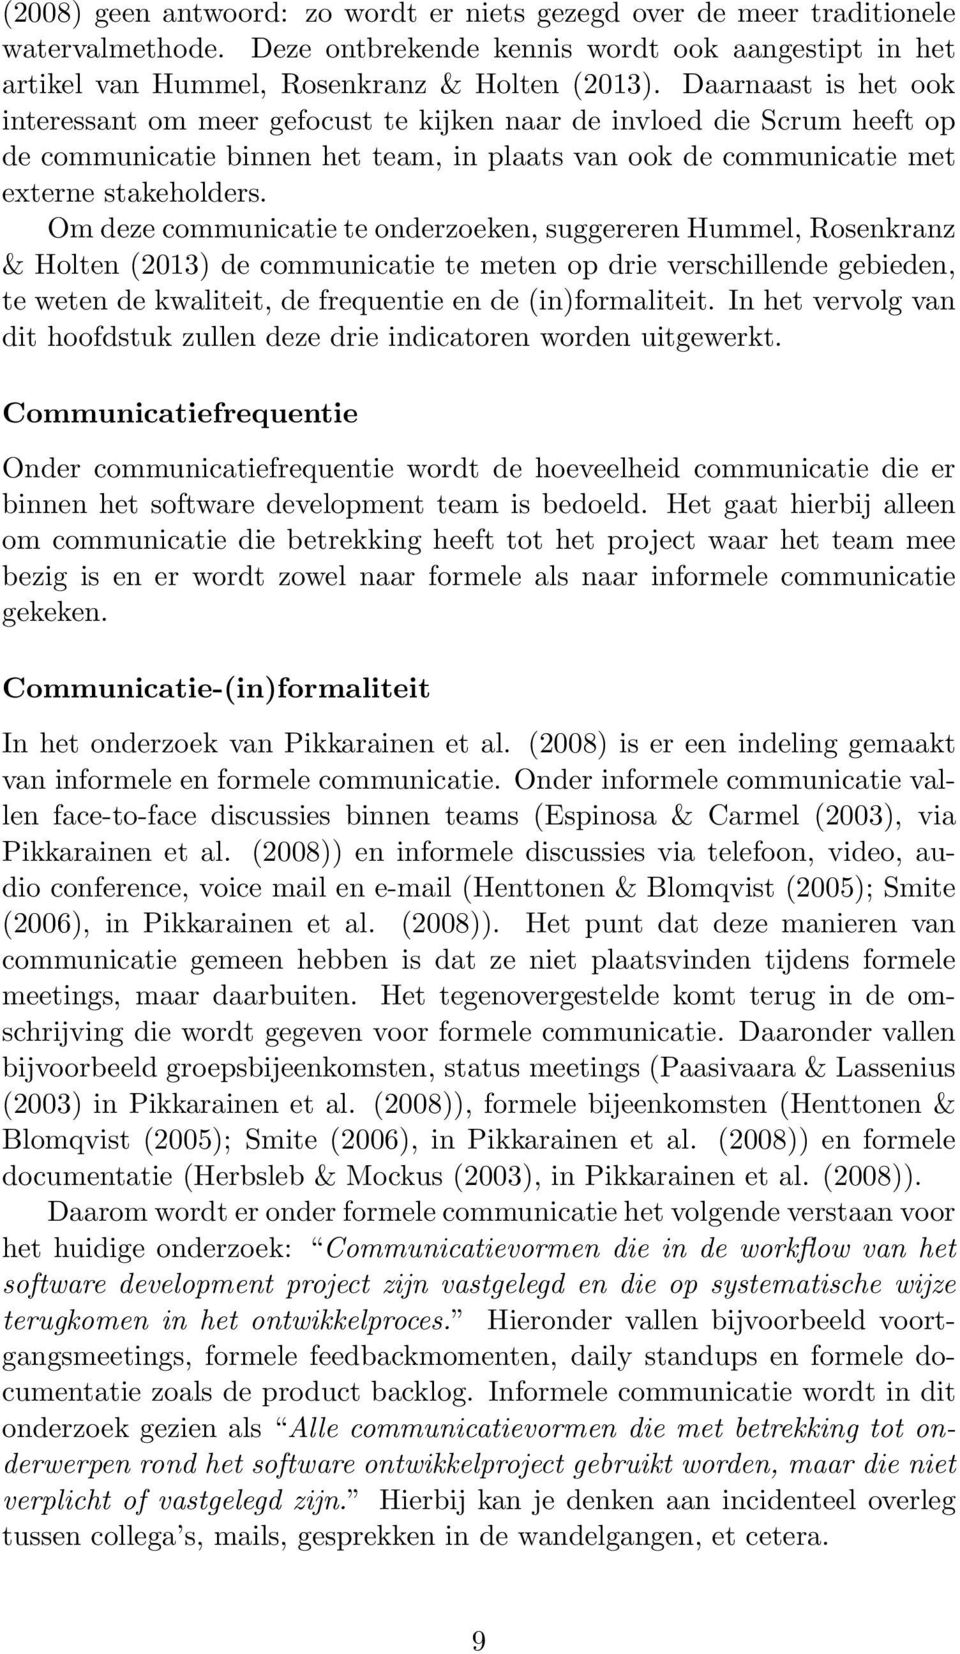 Om deze communicatie te onderzoeken, suggereren Hummel, Rosenkranz & Holten (2013) de communicatie te meten op drie verschillende gebieden, te weten de kwaliteit, de frequentie en de (in)formaliteit.